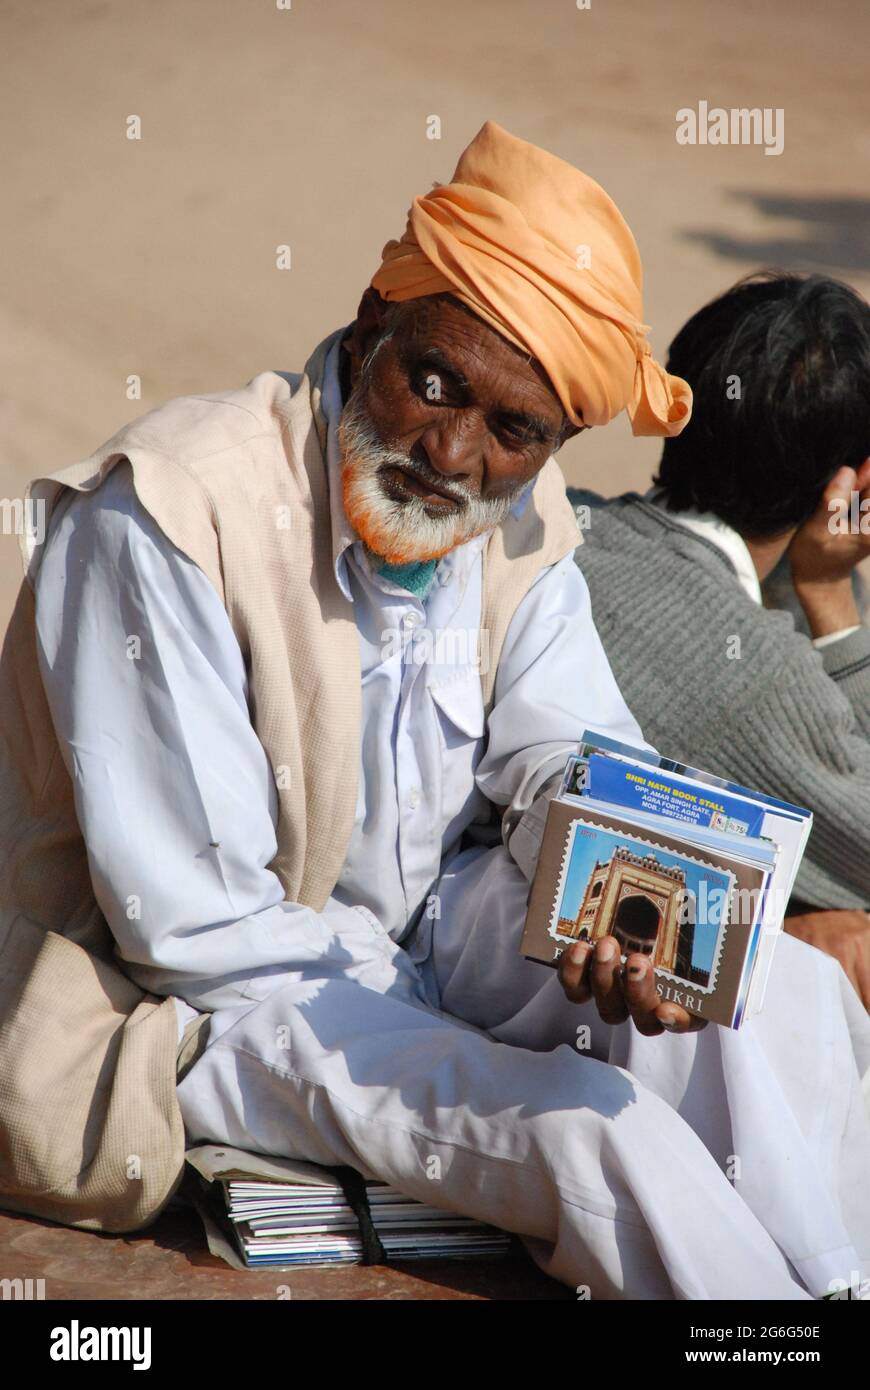 Alter Mann mit Bart und Turban bietet touristische Informationen über Fatehpur Sikri, Indien, Agra, Fatehpur Sikri Stockfoto